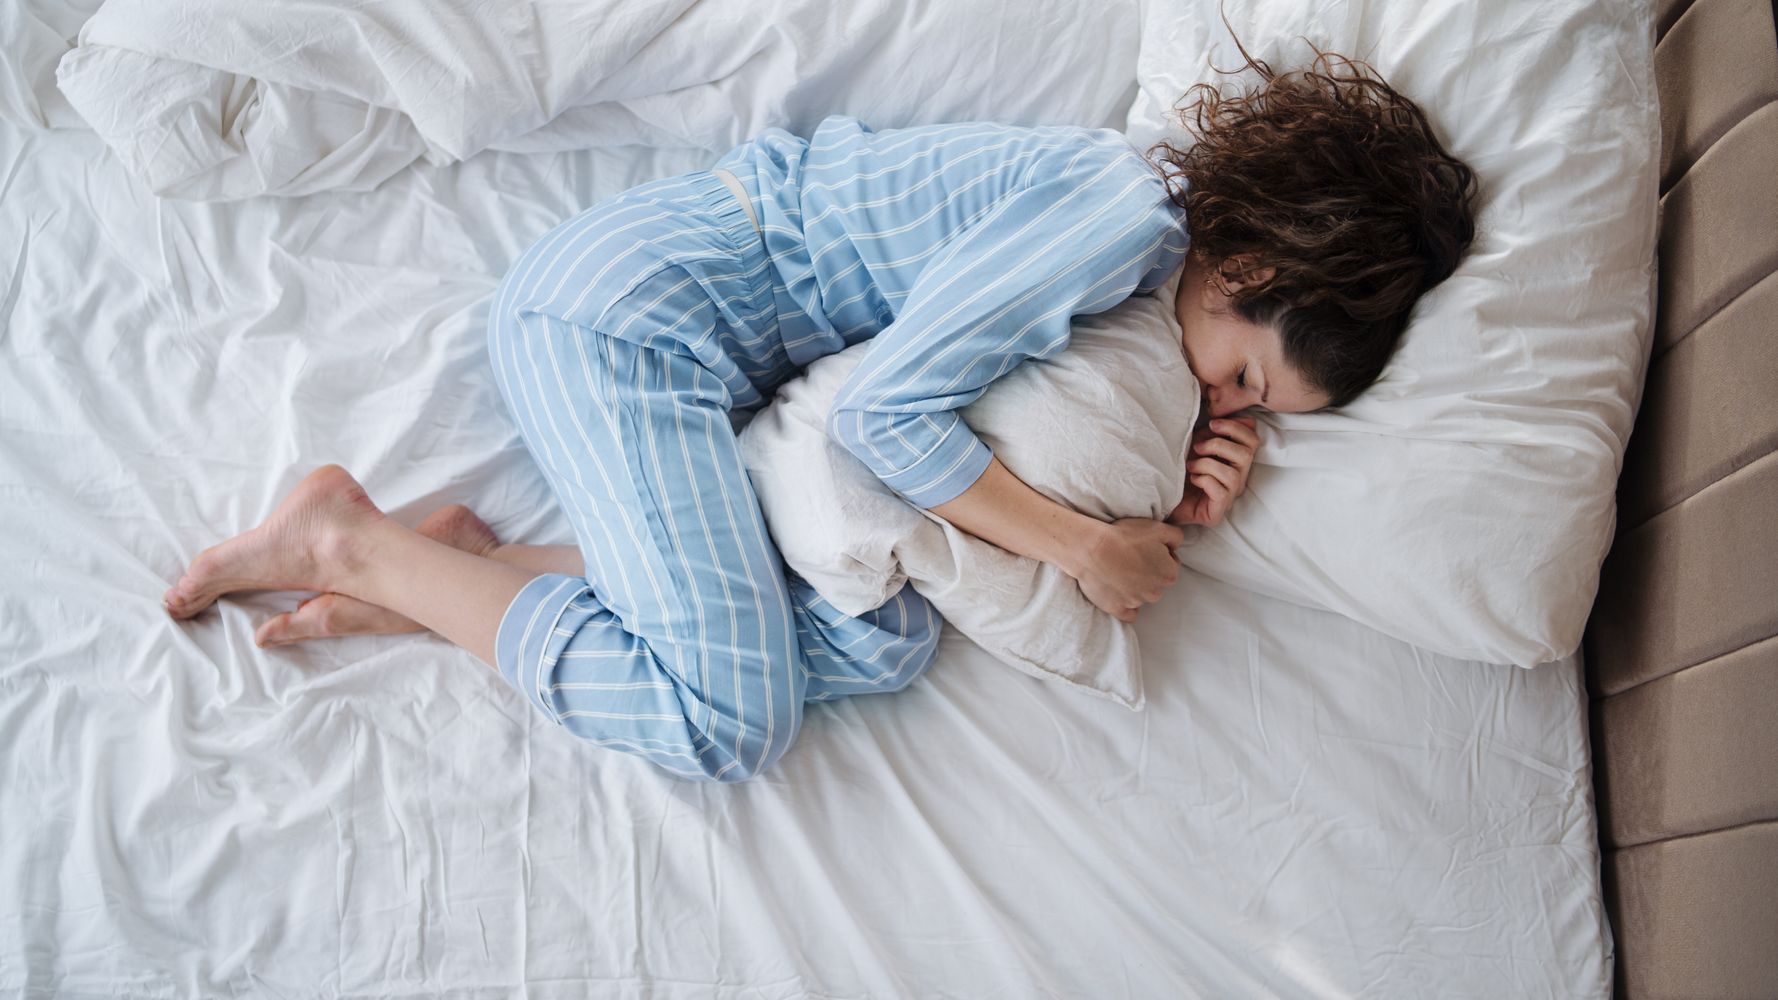 Νέα μελέτη: Όσο καλύτερο ύπνο κάνει κάποιος τόσα περισσότερα χρόνια μπορεί να ζήσει